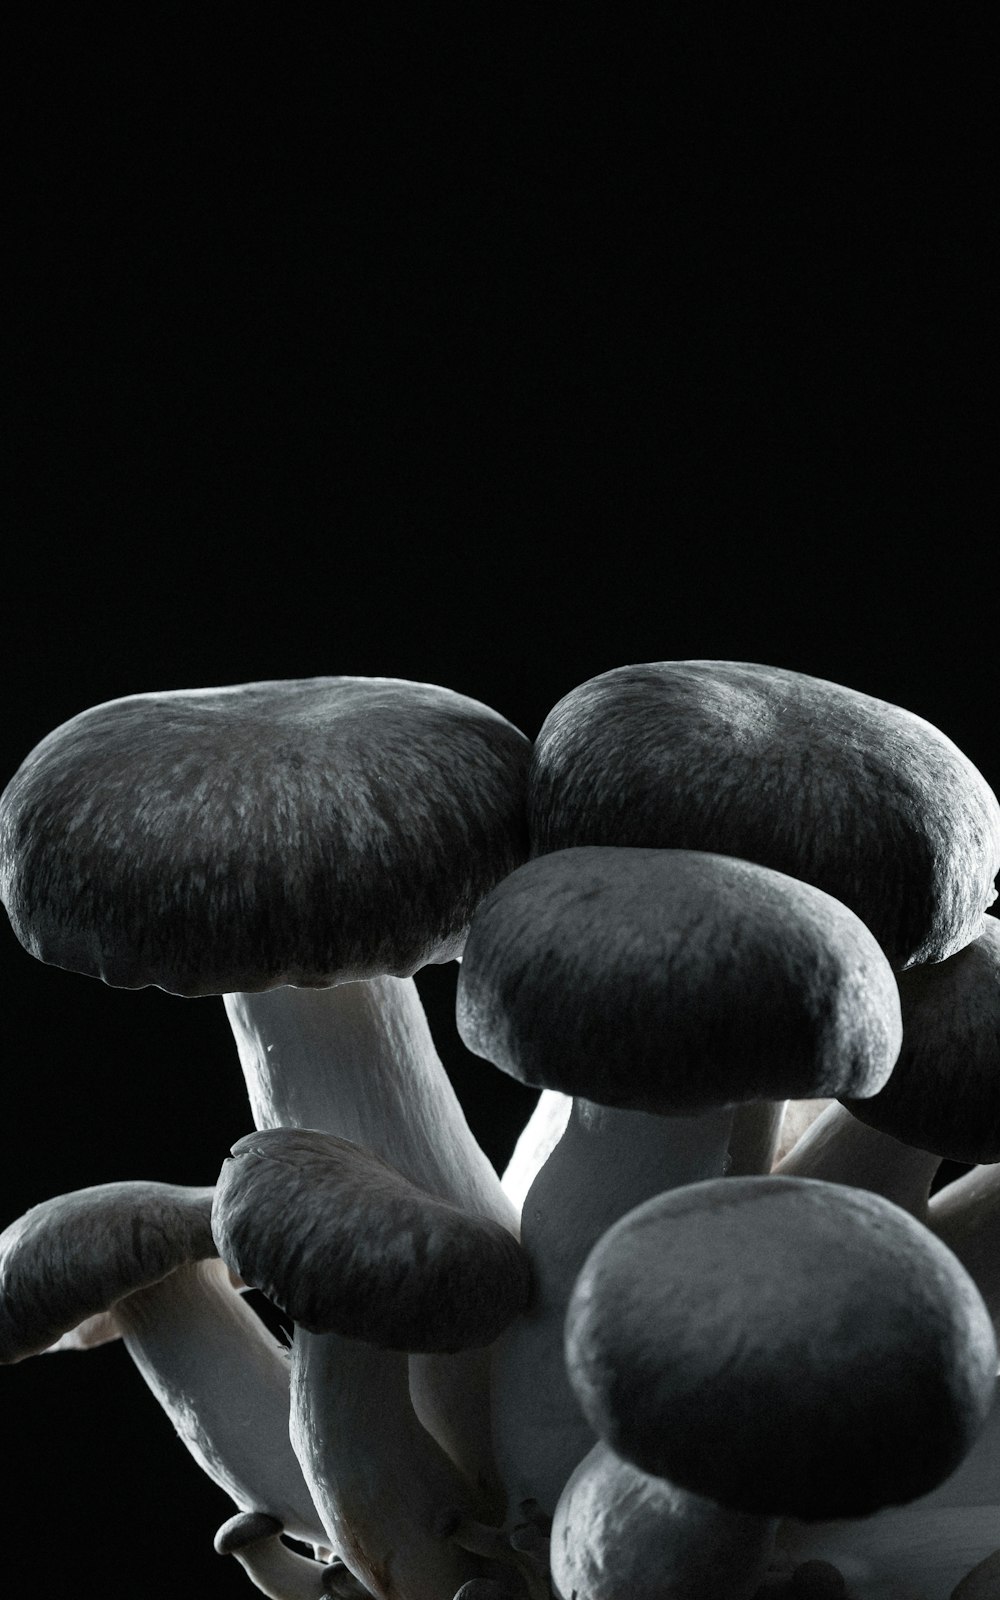 champignons bruns et blancs sur fond noir